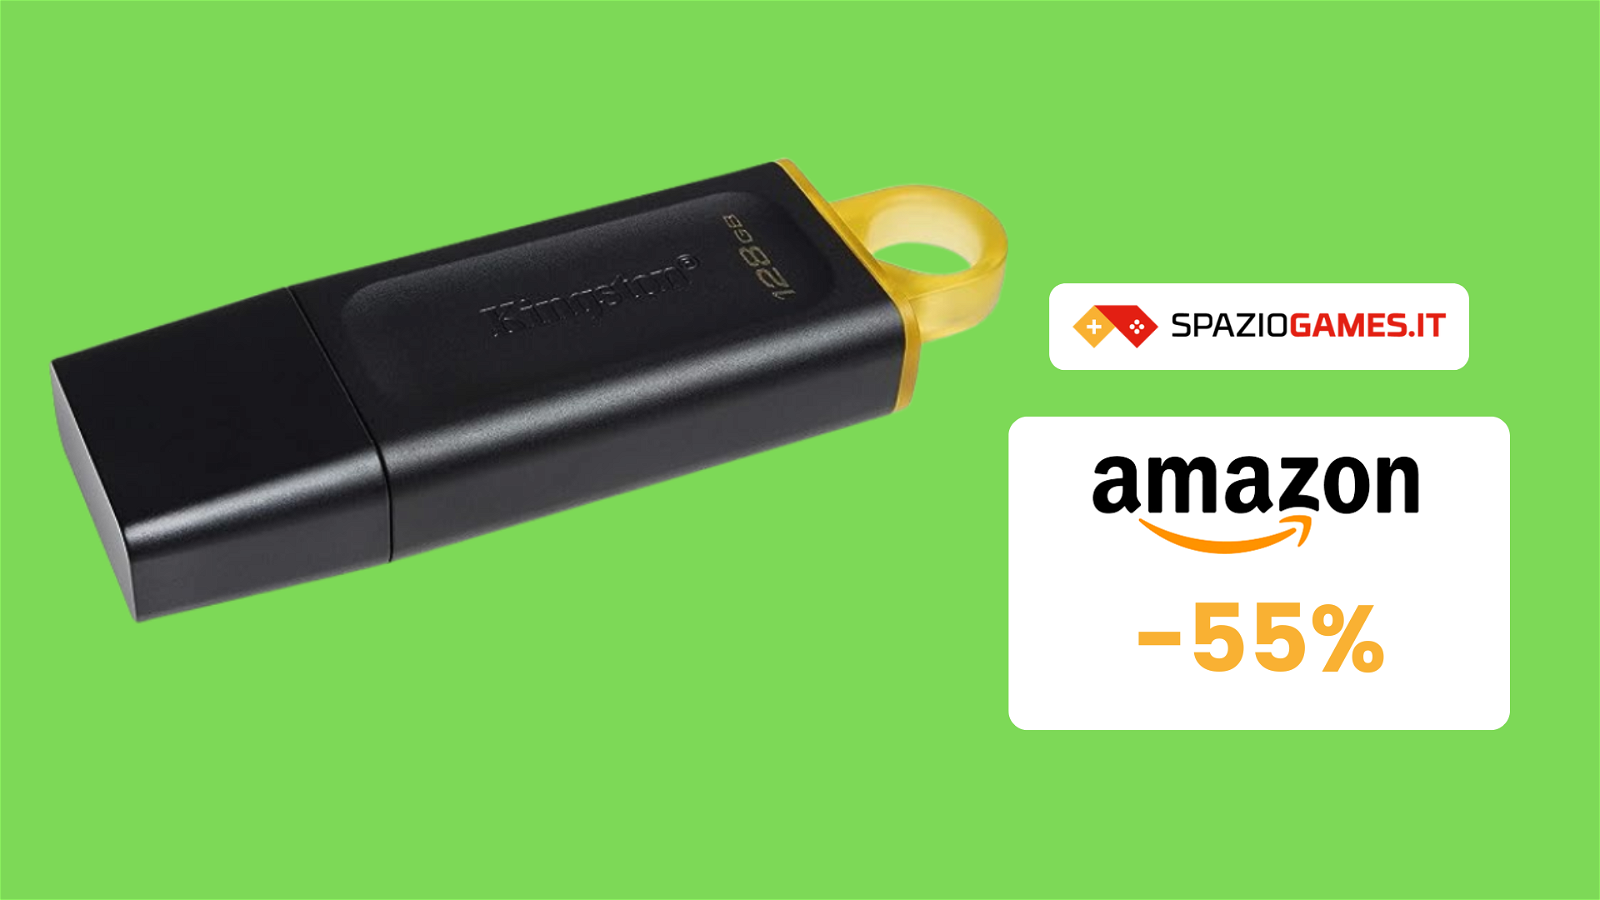 Chiavetta USB Kingston da 128GB a soli 9€: un prezzo imbattibile!